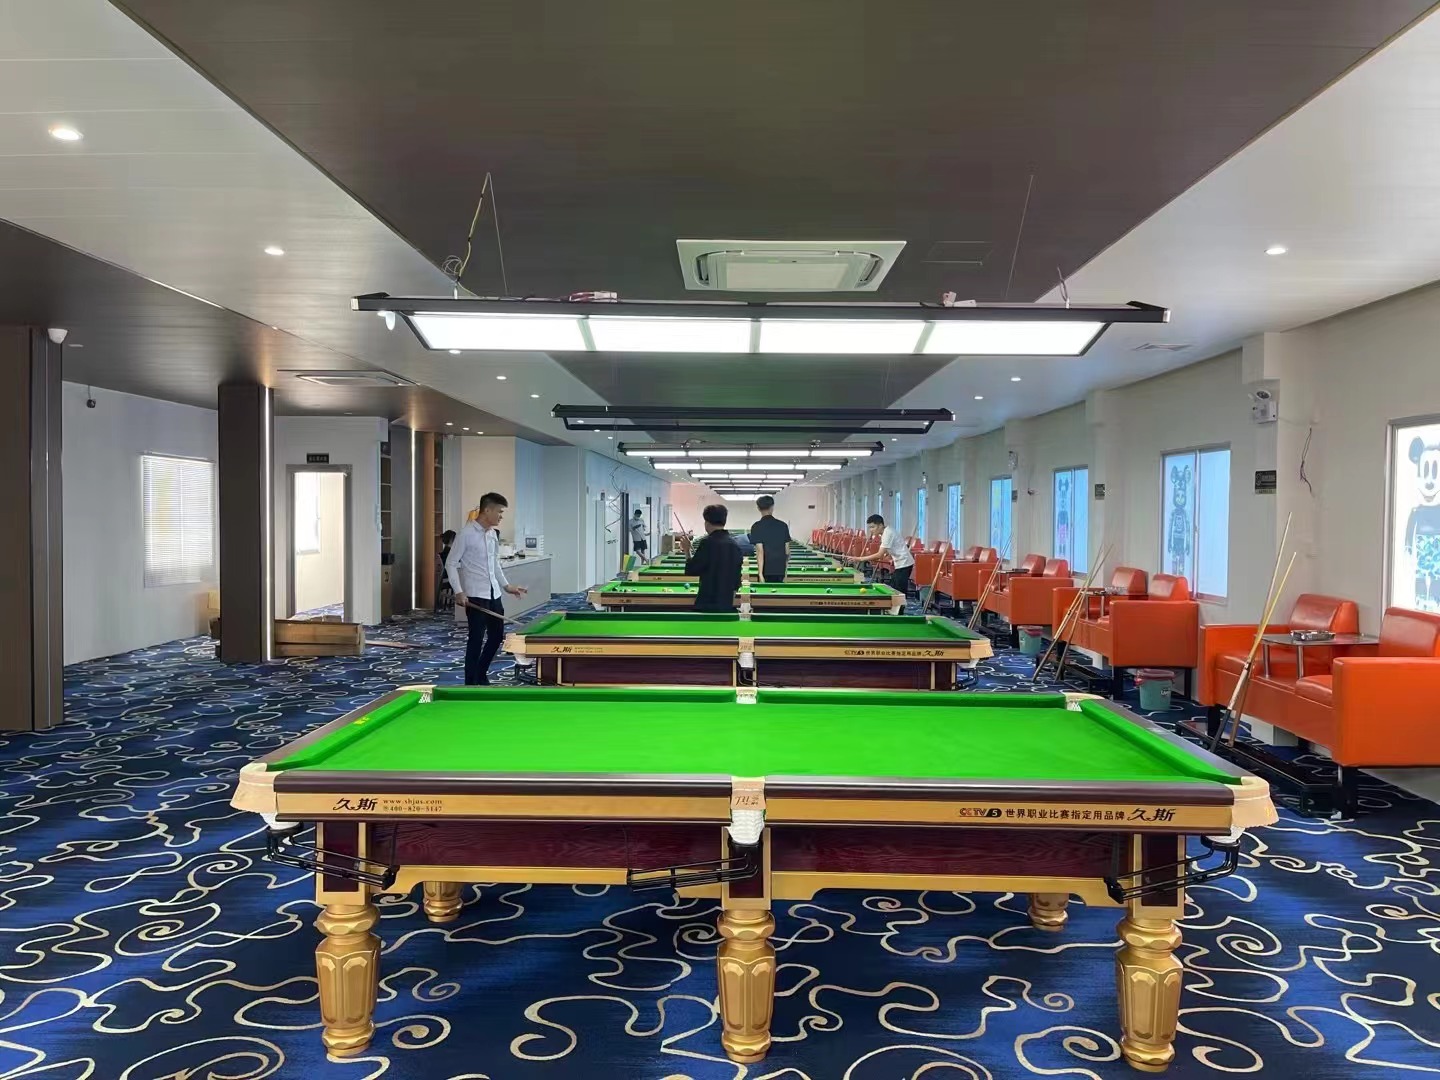 上海久斯比赛台球桌中八球台商用台球桌